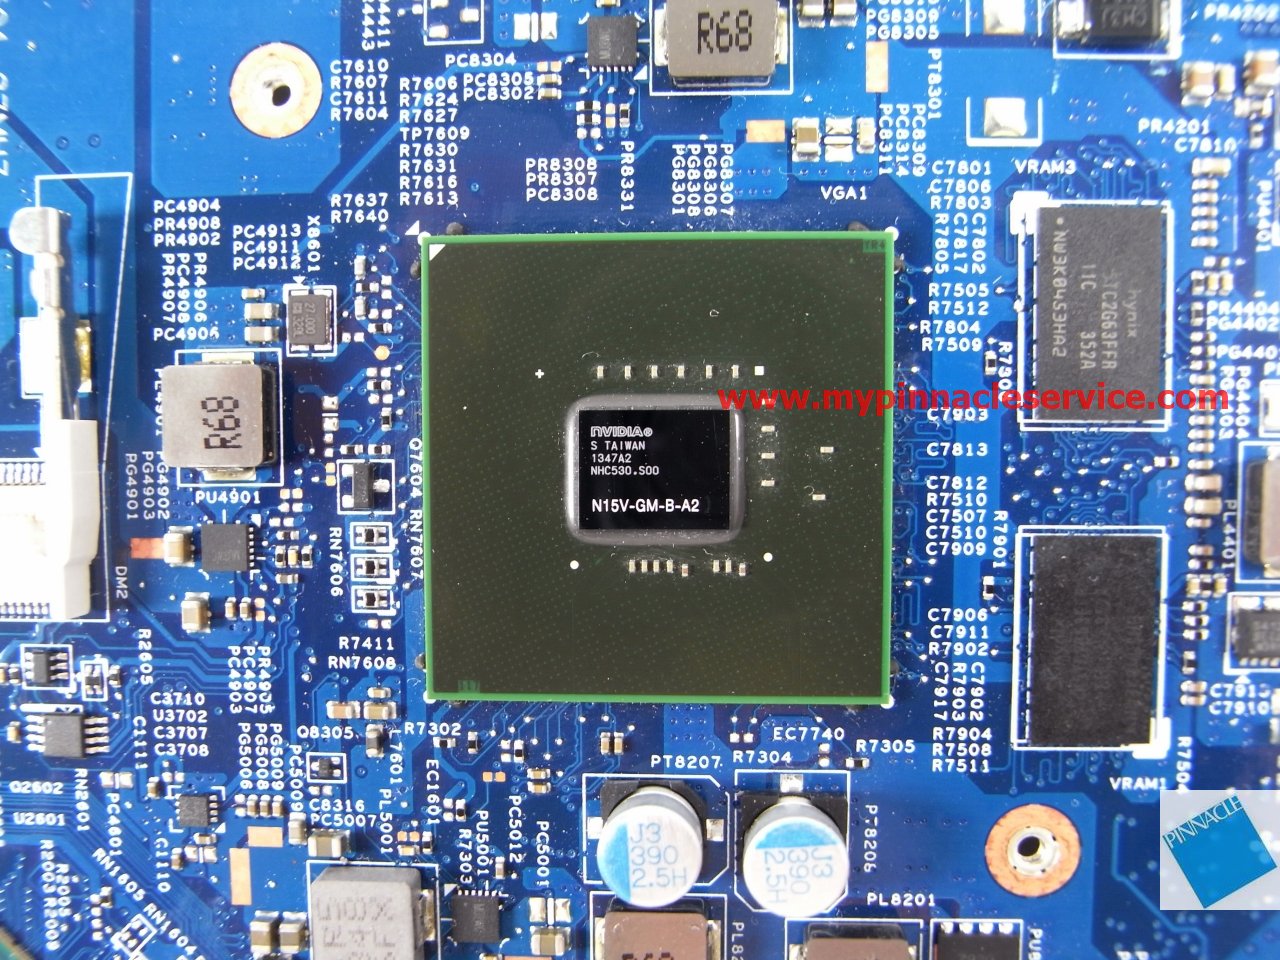 motherboard-for-acer-aspire-e1-410-e1-410g-ea40-bm-48.4oc10.01m-rimg0040-nbmgp1005.jpg